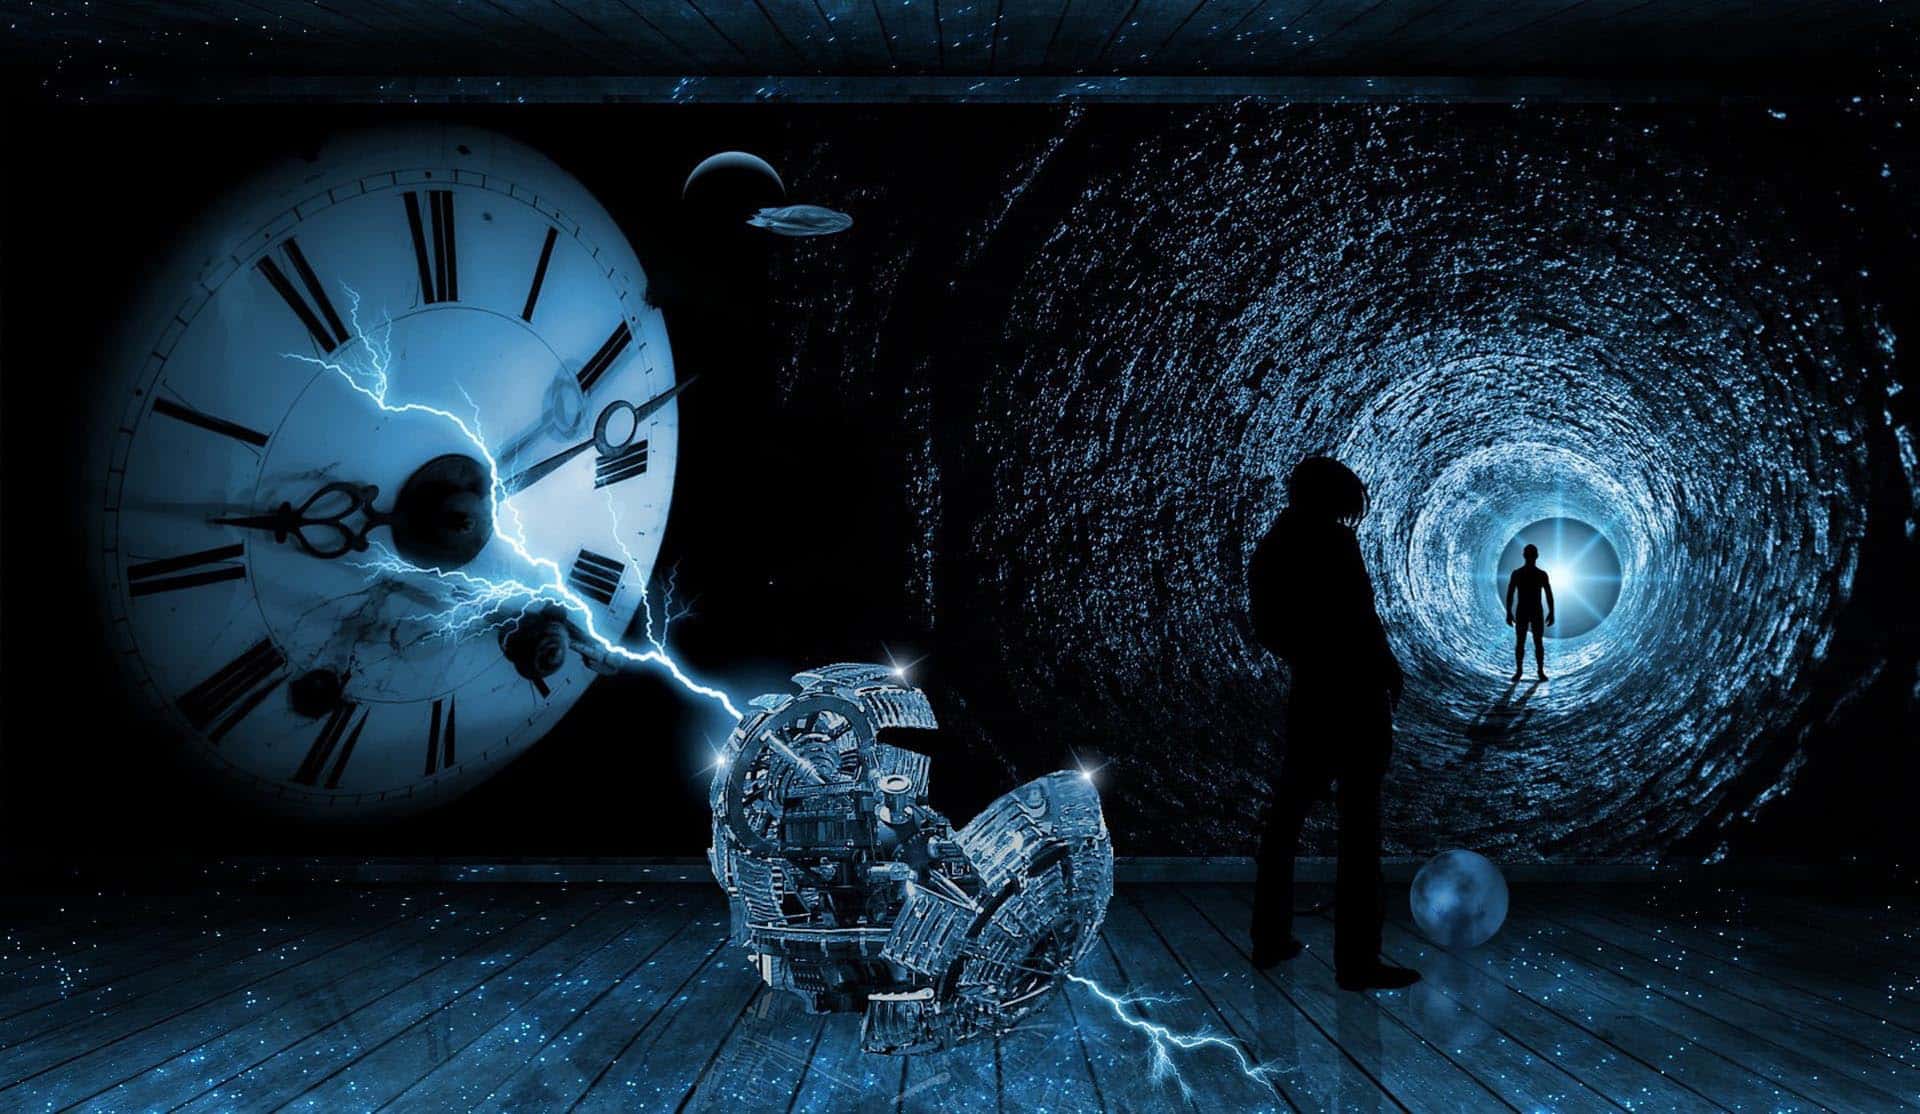 É possível realizar viagens no tempo, assim como nas ficções científicas?